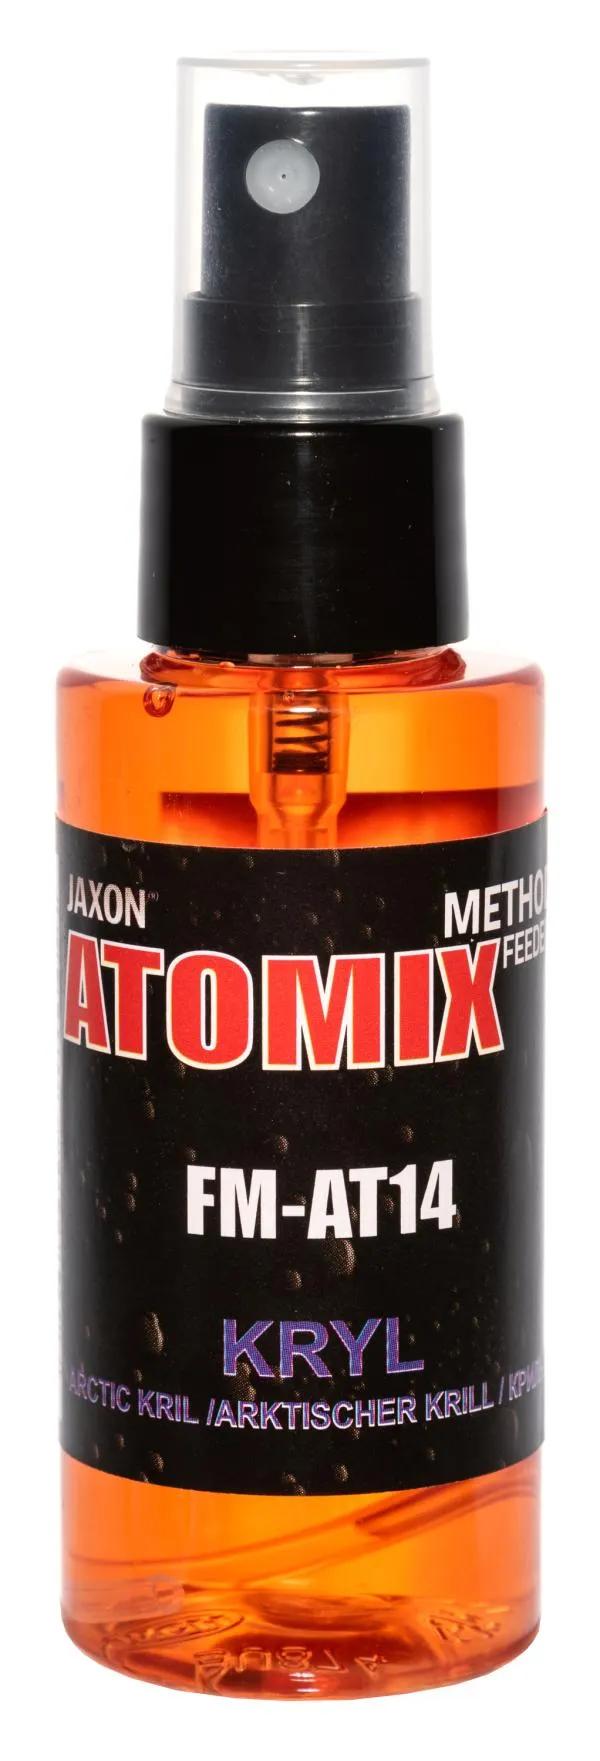 NextFish - Horgász webshop és horgászbolt - JAXON ATOMIX - ARCTIC KRILL 50g aroma